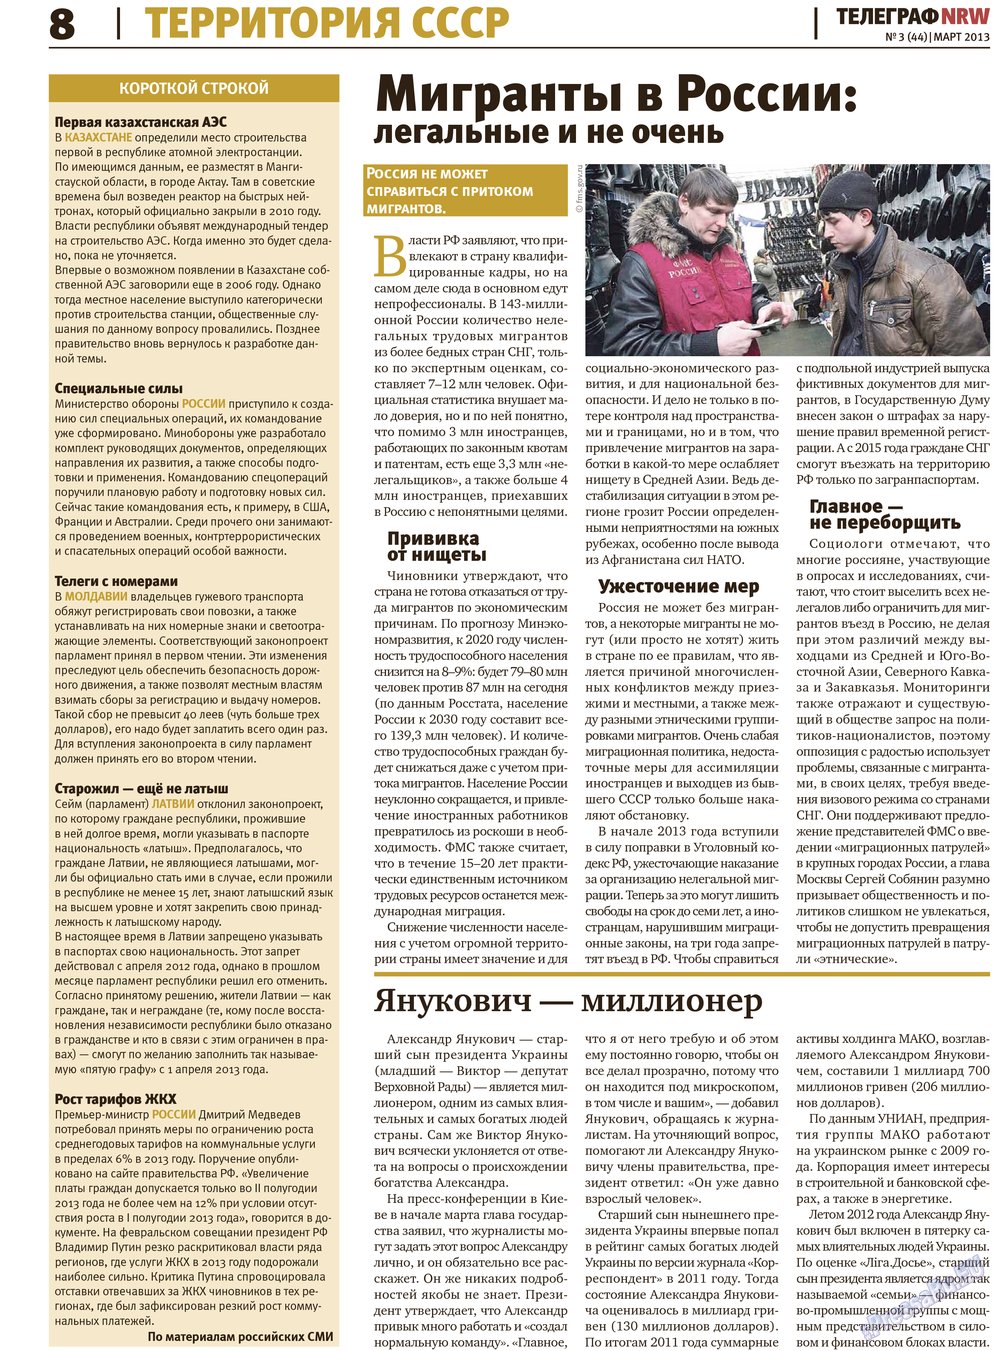 Телеграф NRW (газета). 2013 год, номер 3, стр. 8